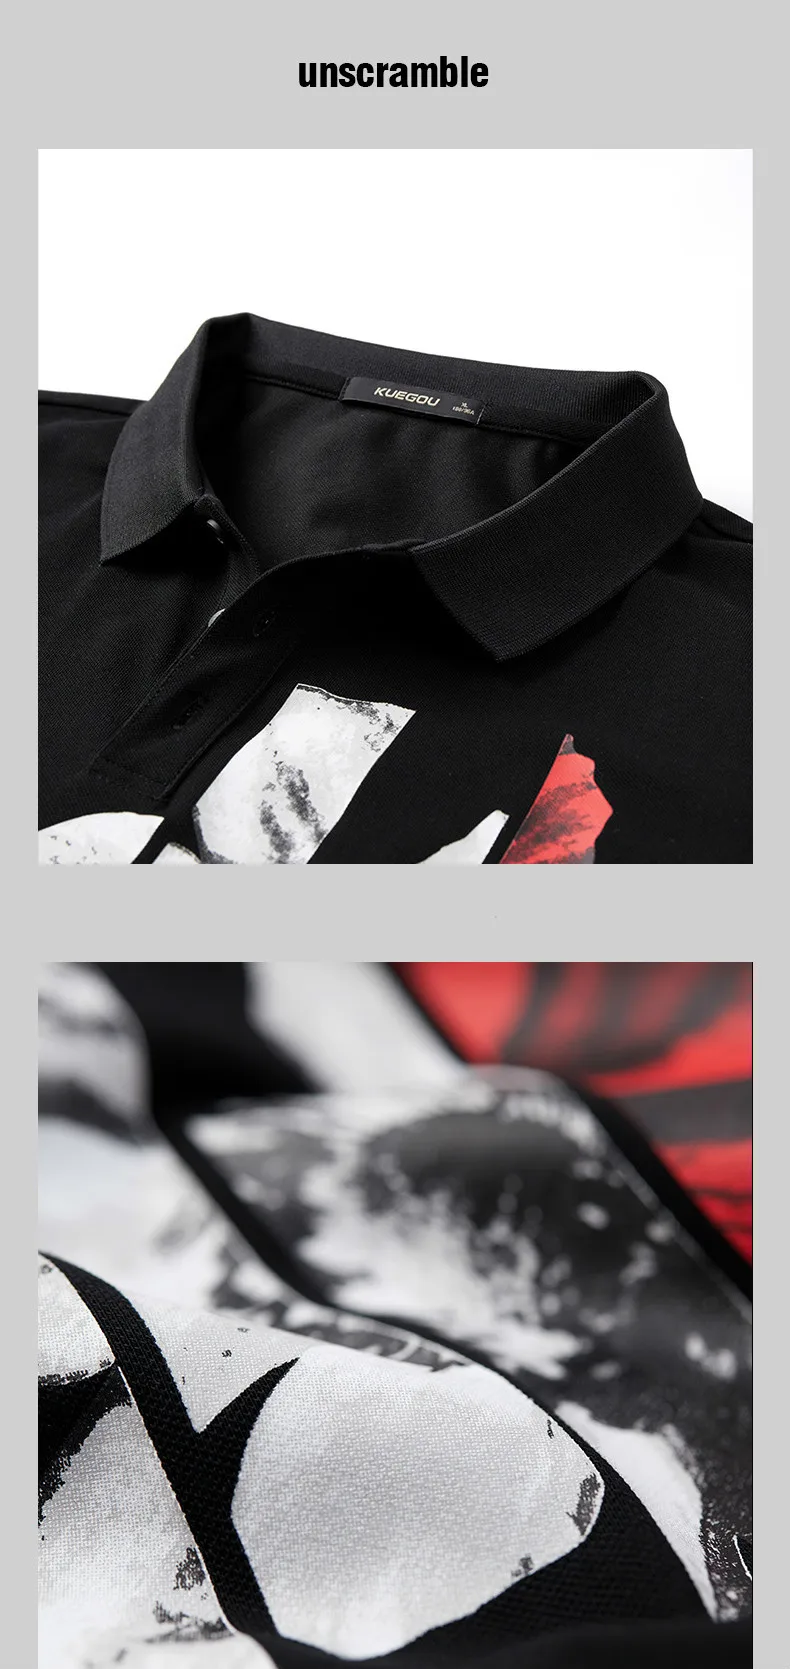 KUEGOU Осенняя хлопковая рубашка поло с принтом белого и черного цвета, Мужская Модная приталенная рубашка с длинным рукавом, Мужская одежда, бренд Топ 3124